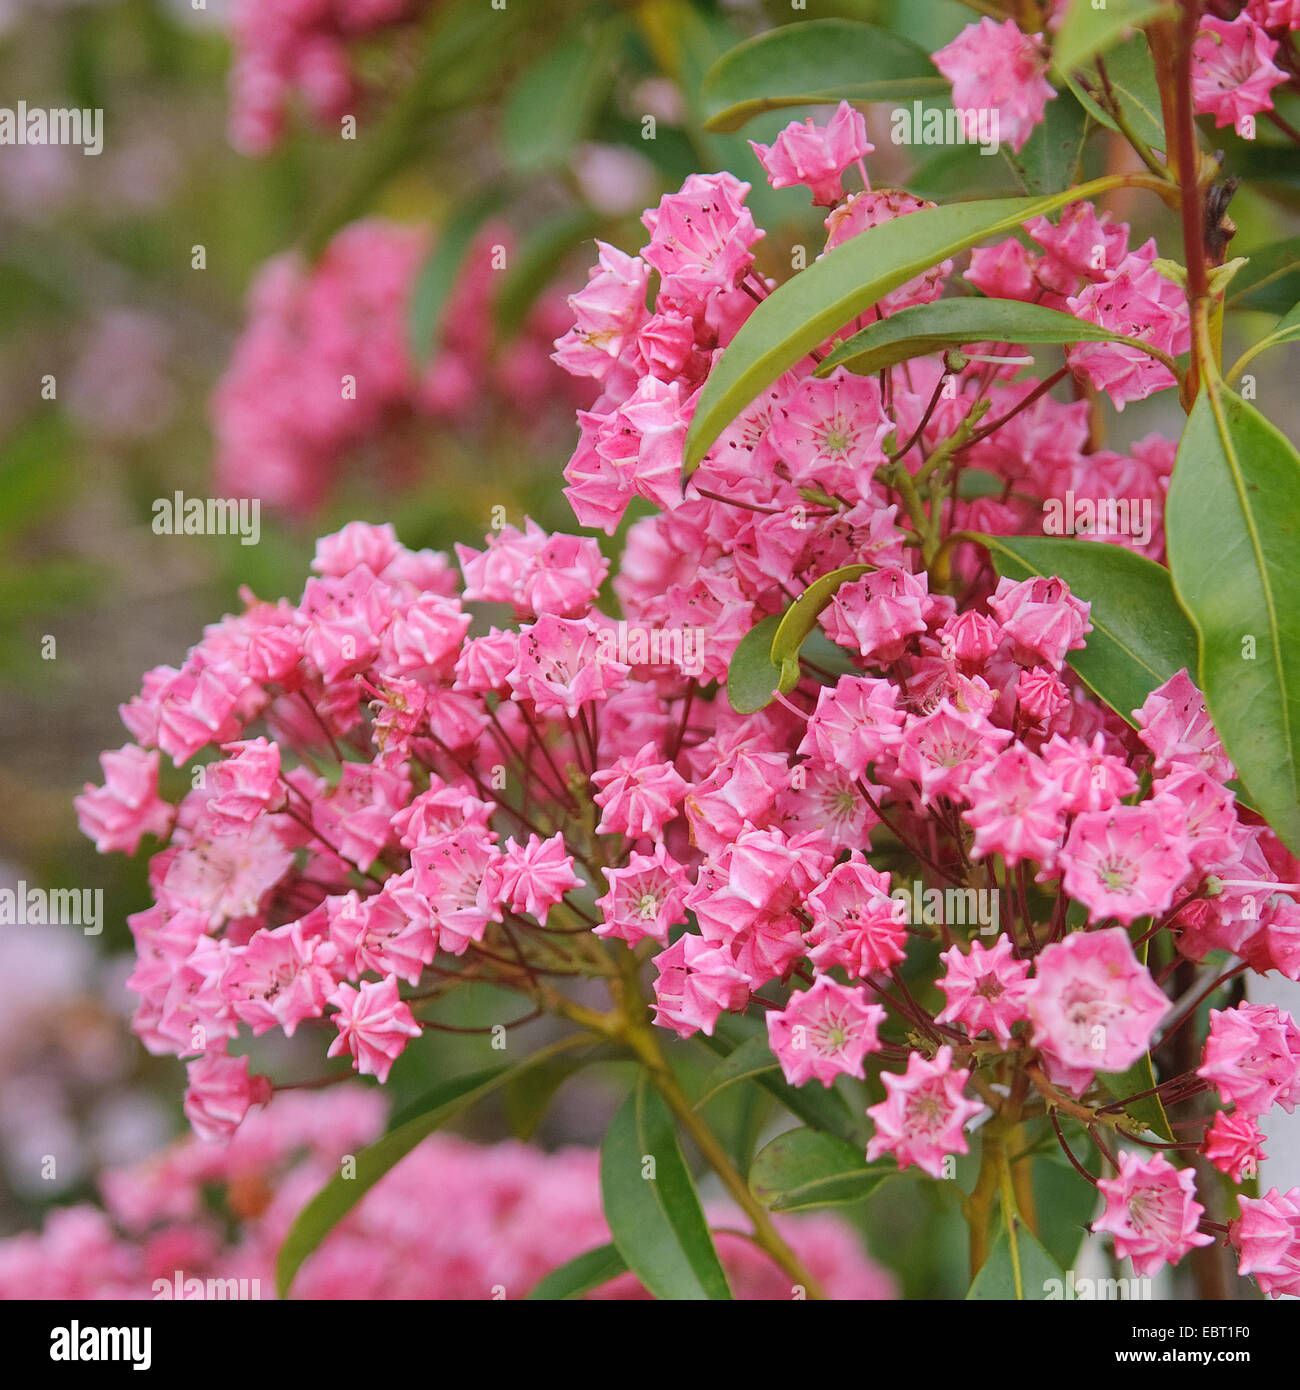 mountain laurel (Kalmia latifolia 'Pink Charme', Kalmia latifolia Pink Charme), cultivar Pink Charme, blooming Stock Photo